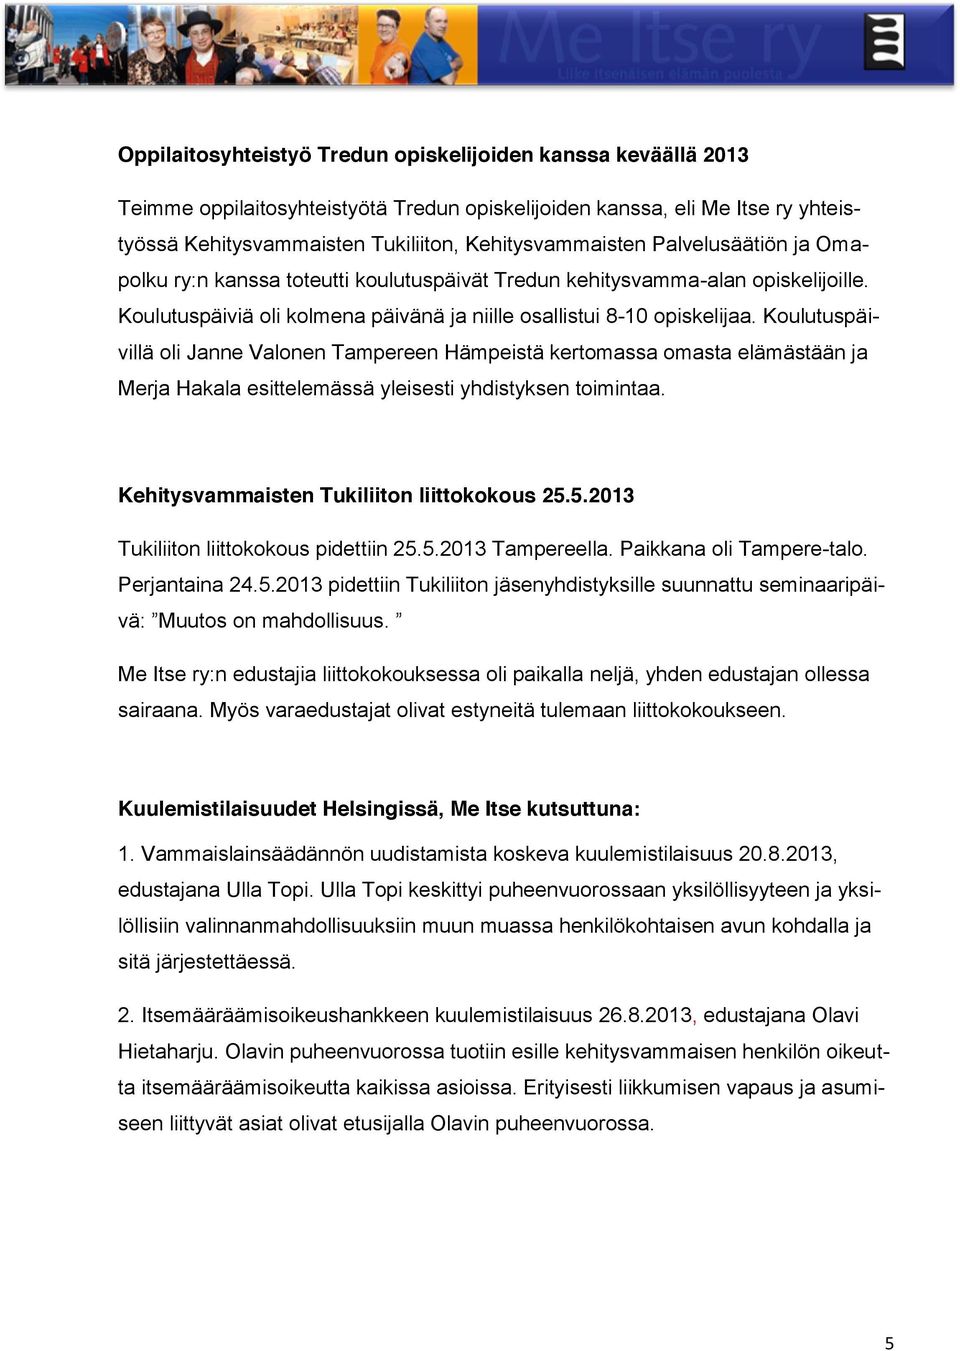 Koulutuspäivillä oli Janne Valonen Tampereen Hämpeistä kertomassa omasta elämästään ja Merja Hakala esittelemässä yleisesti yhdistyksen toimintaa. Kehitysvammaisten Tukiliiton liittokokous 25.